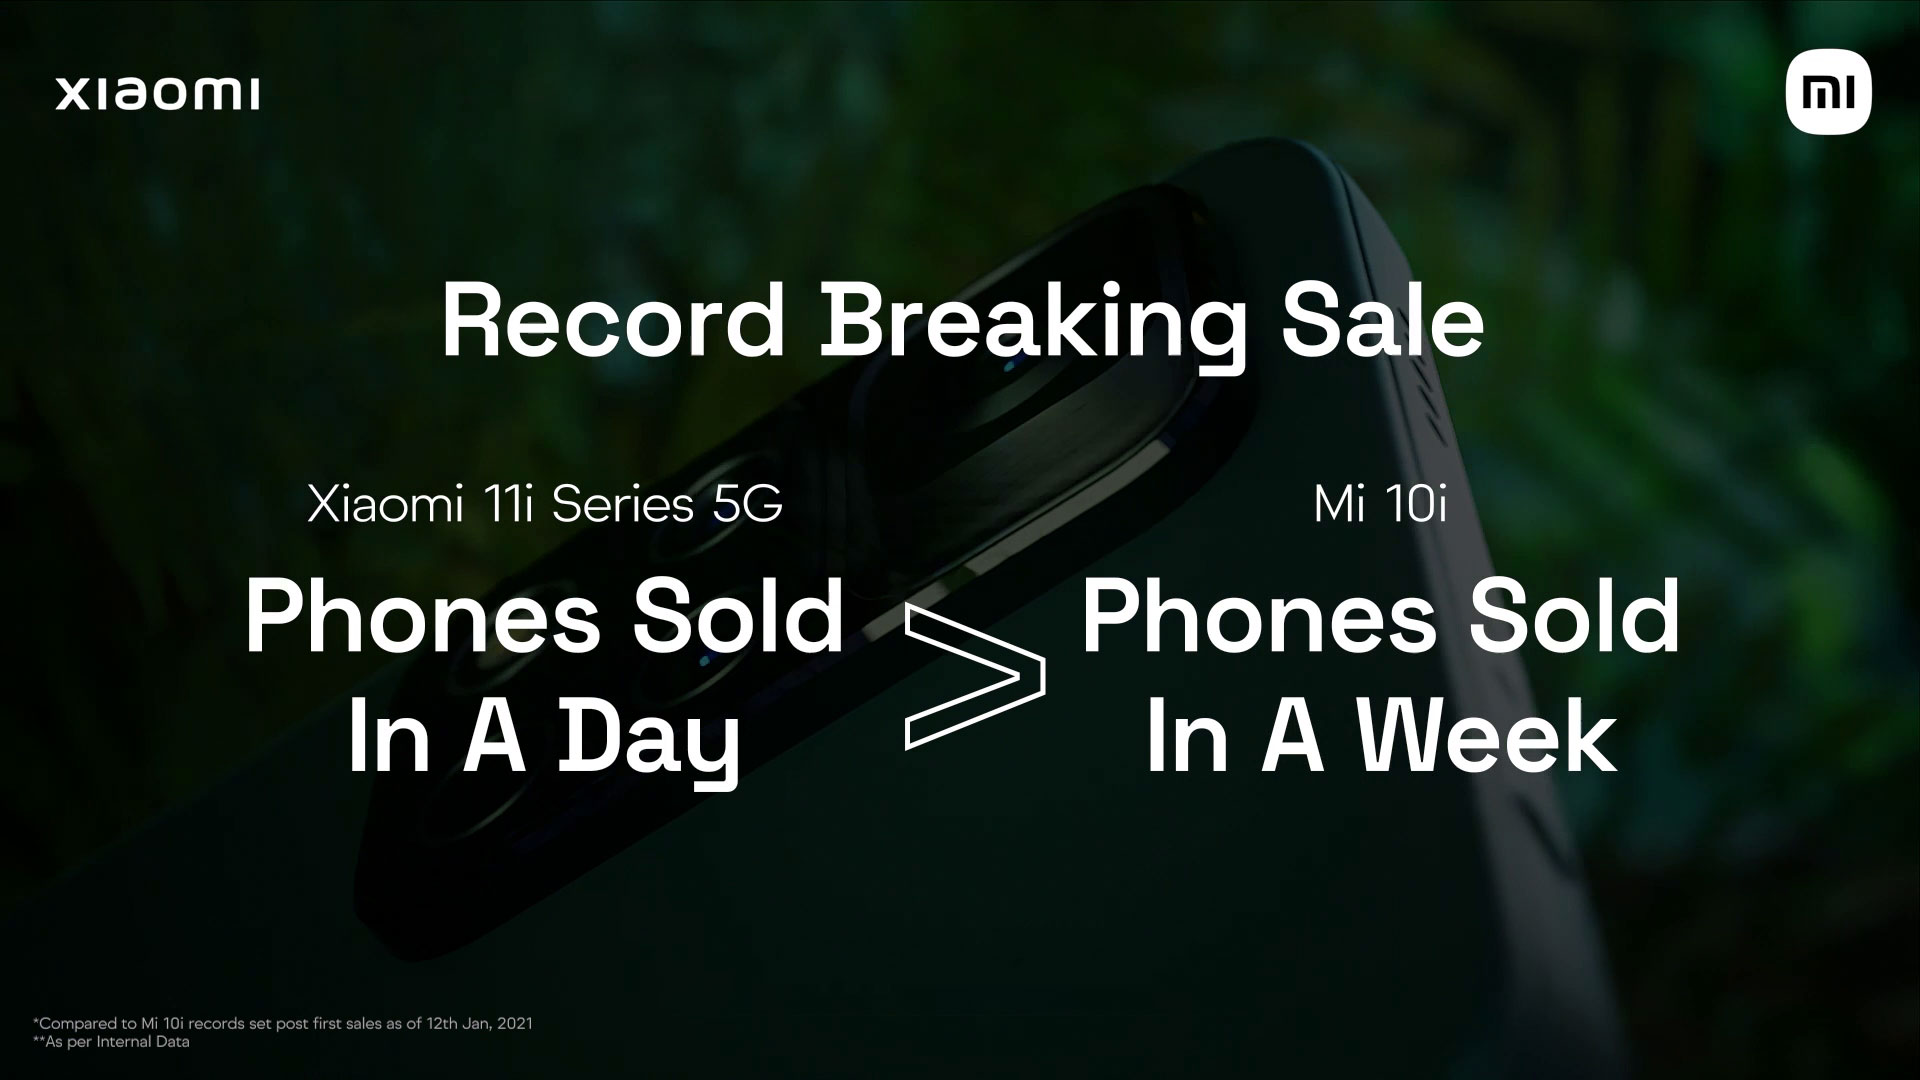 Les smartphones Xiaomi 11i établissent un nouveau record - plus de modèles vendus en un jour que Xiaomi Mi 10i en une semaine